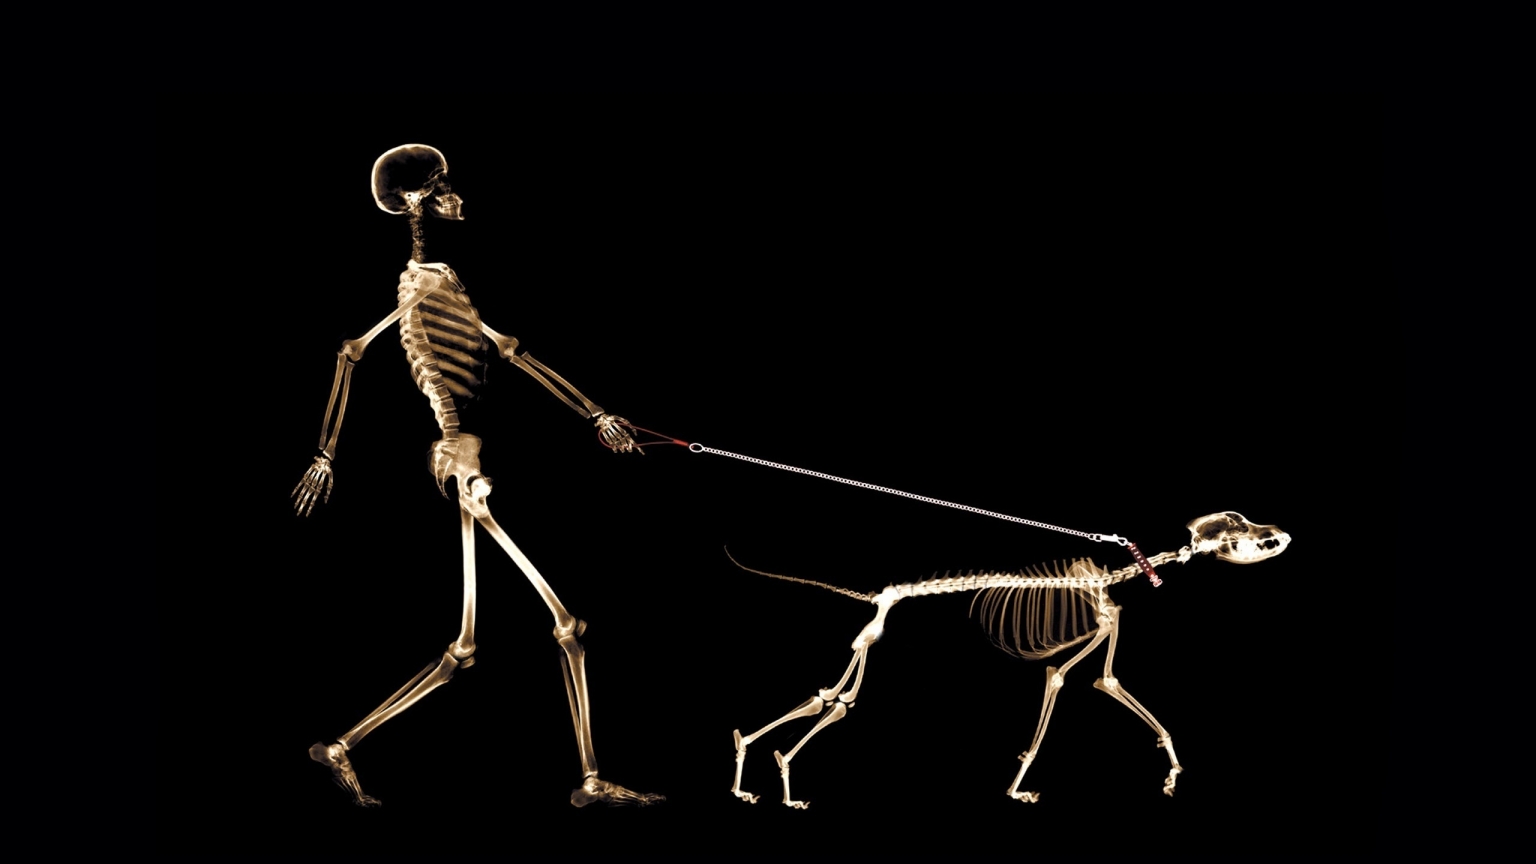 Skeletons Walking for 1536 x 864 HDTV resolution